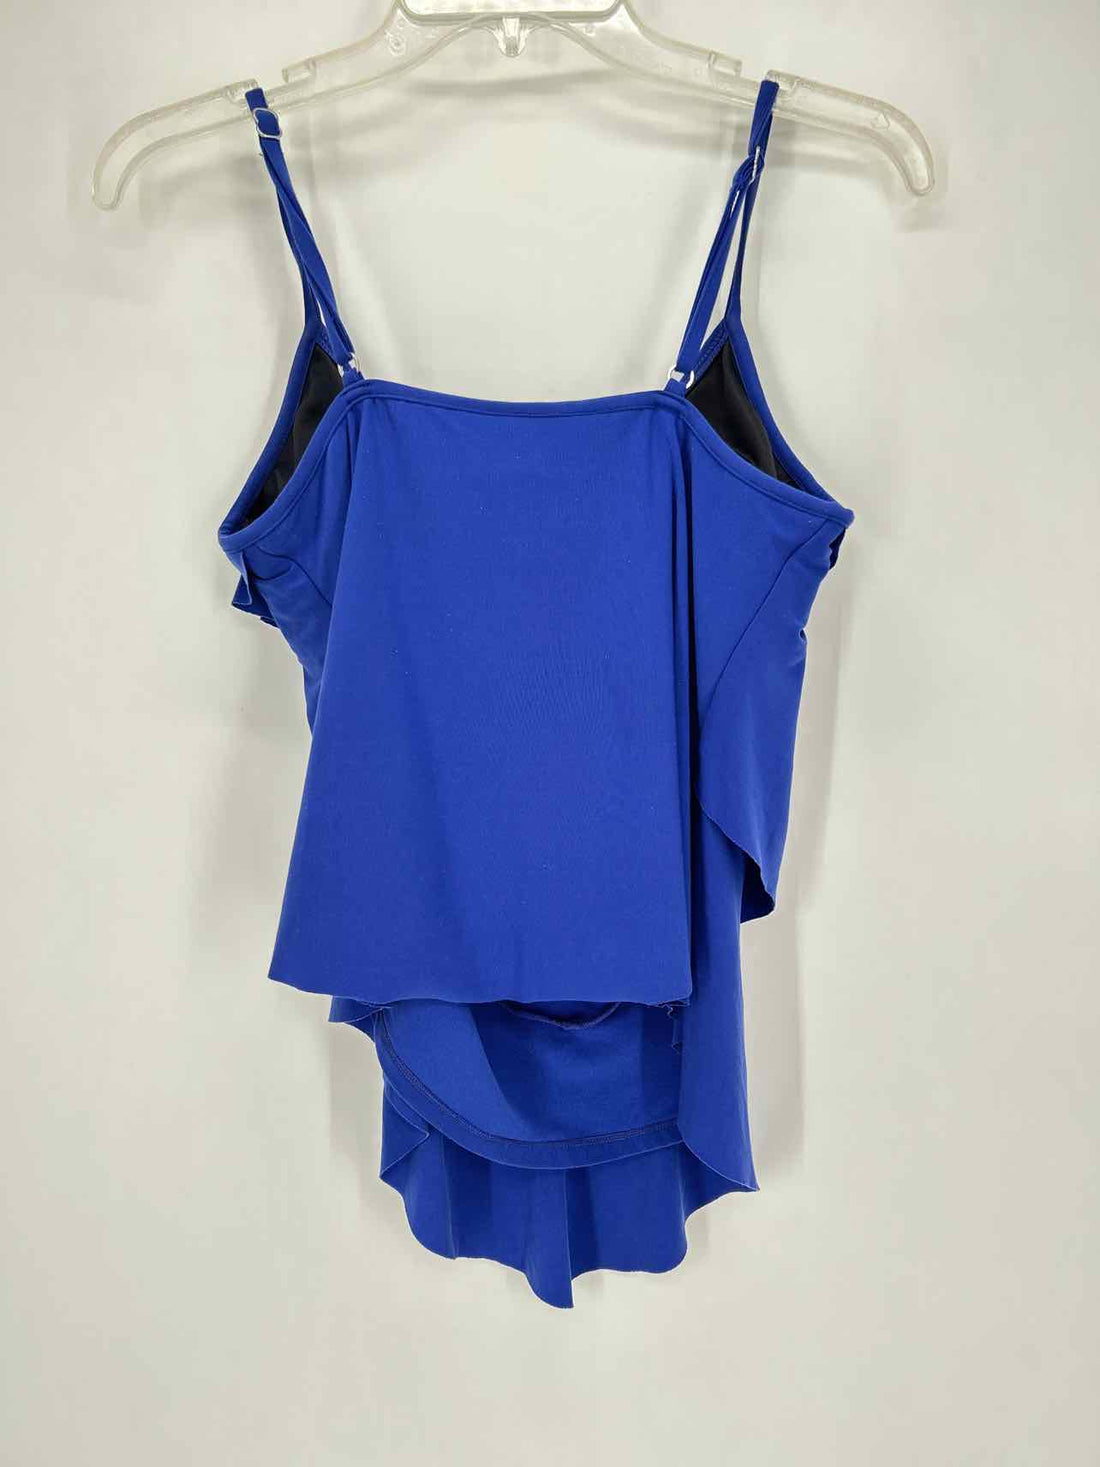 Magic Suit Size 10 Cobalt Blue Swimsuit Top Only